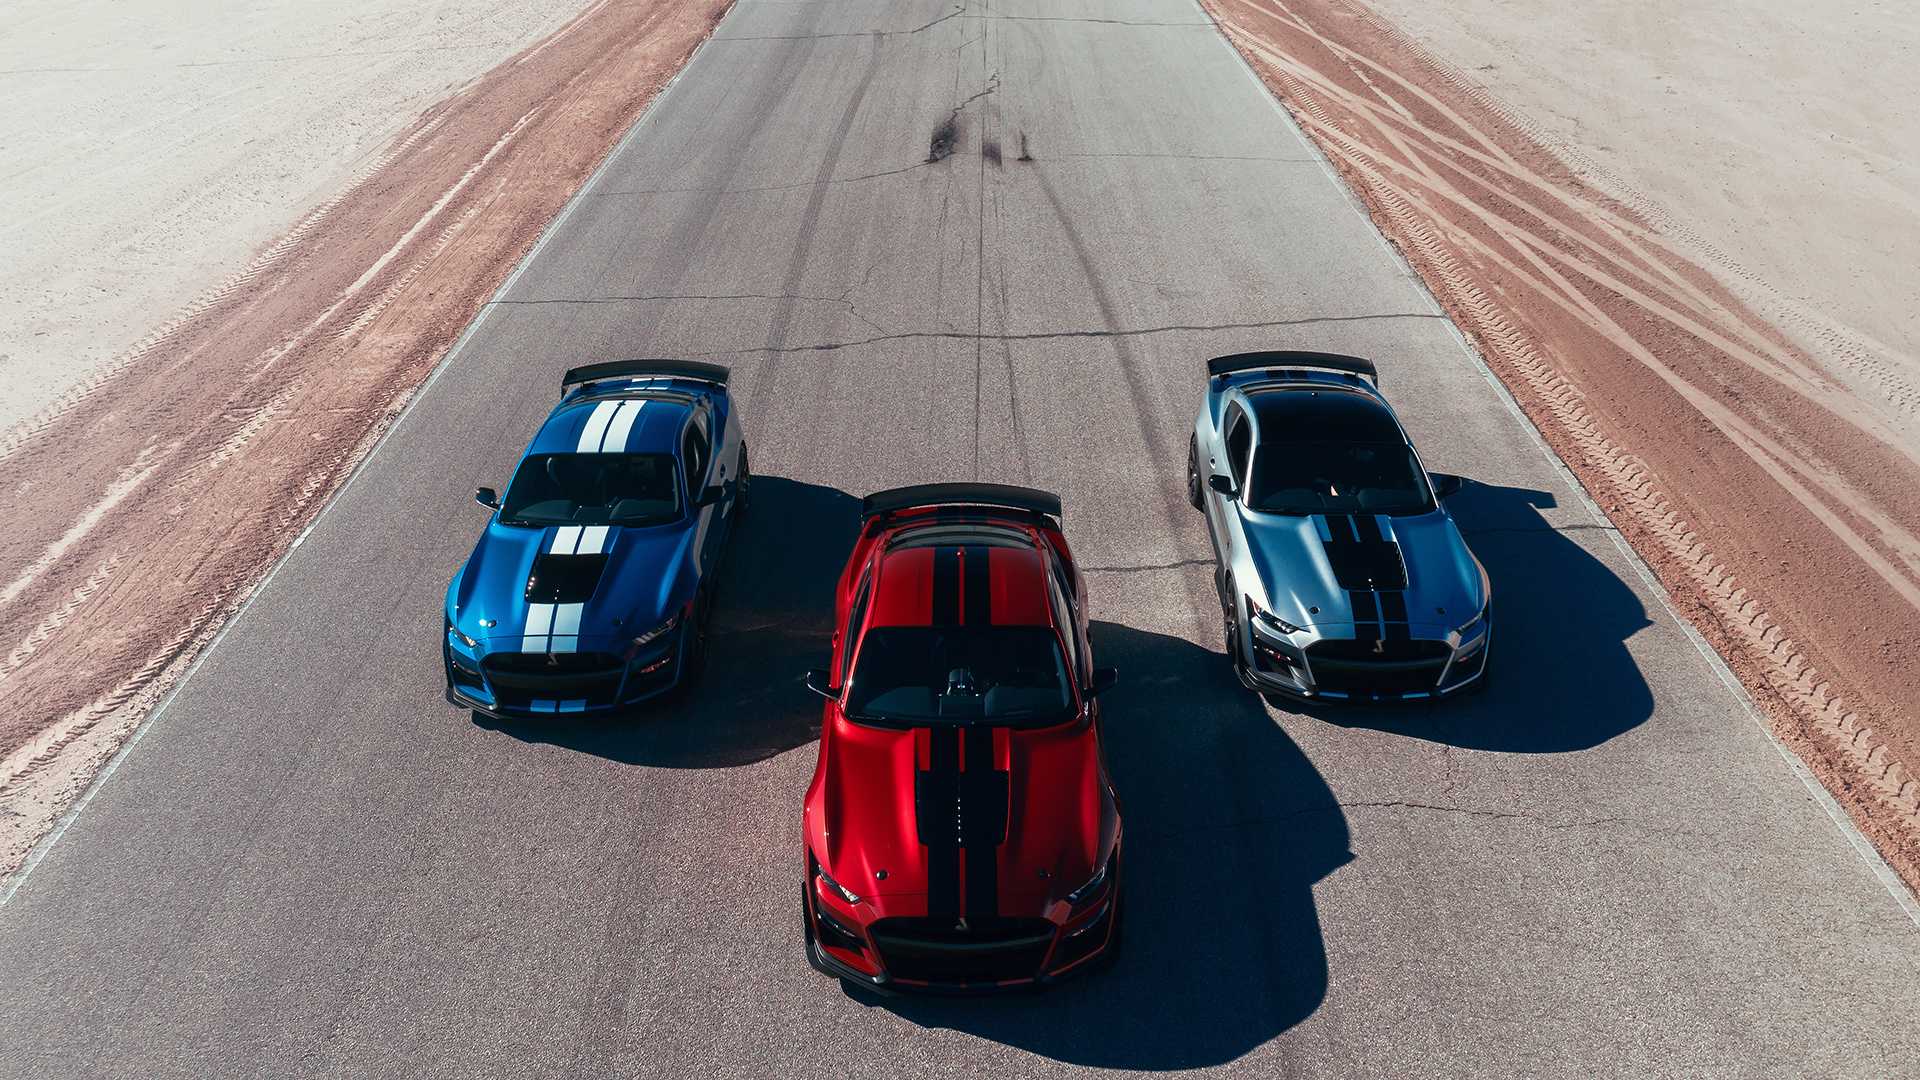 شفروليه كامارو ZL1 بمواجهة كل من فورد موستانج شيلبي GT 500 ودودج تشالنجر هيلكات : أيهما تفضلون؟ 